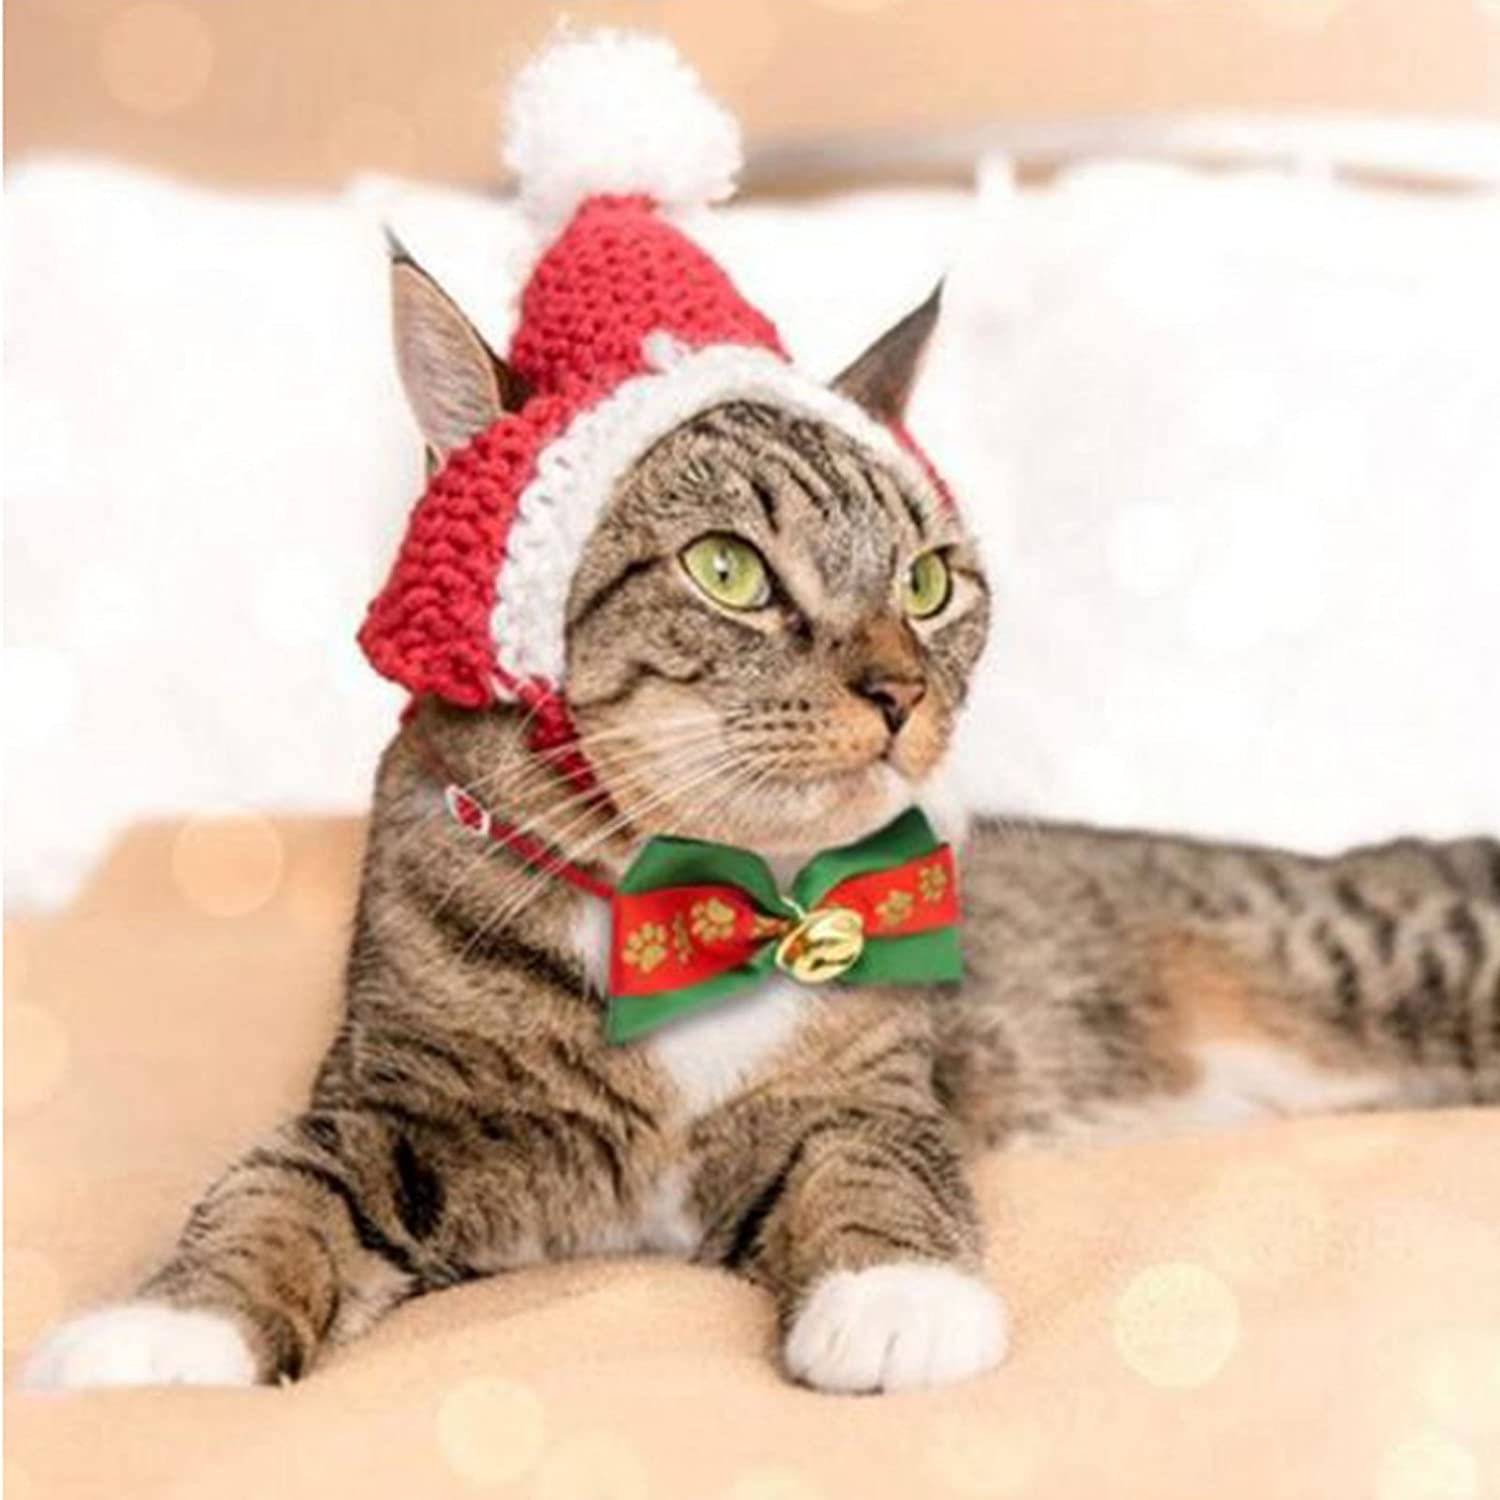  OTOTEC 10 Piezas de Navidad Mascota Gato Perro Pajarita Ajustable Collar Hebillas Corbata patrón de Navidad Accesorios de Aseo, 19-34 cm 